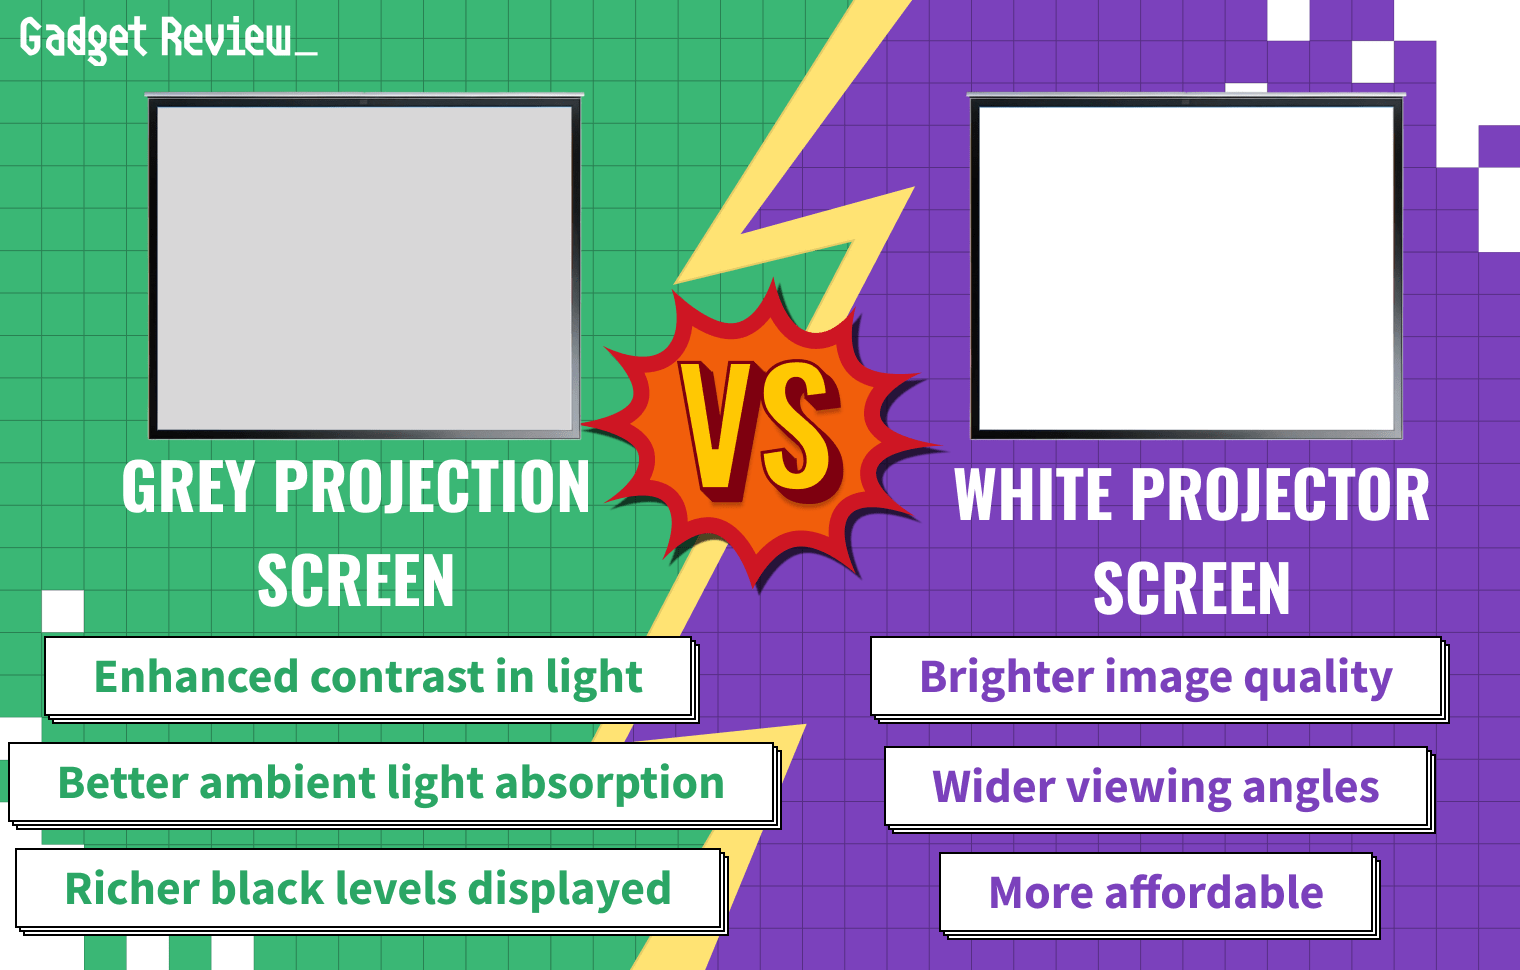 Grey Projector Screen Vs White